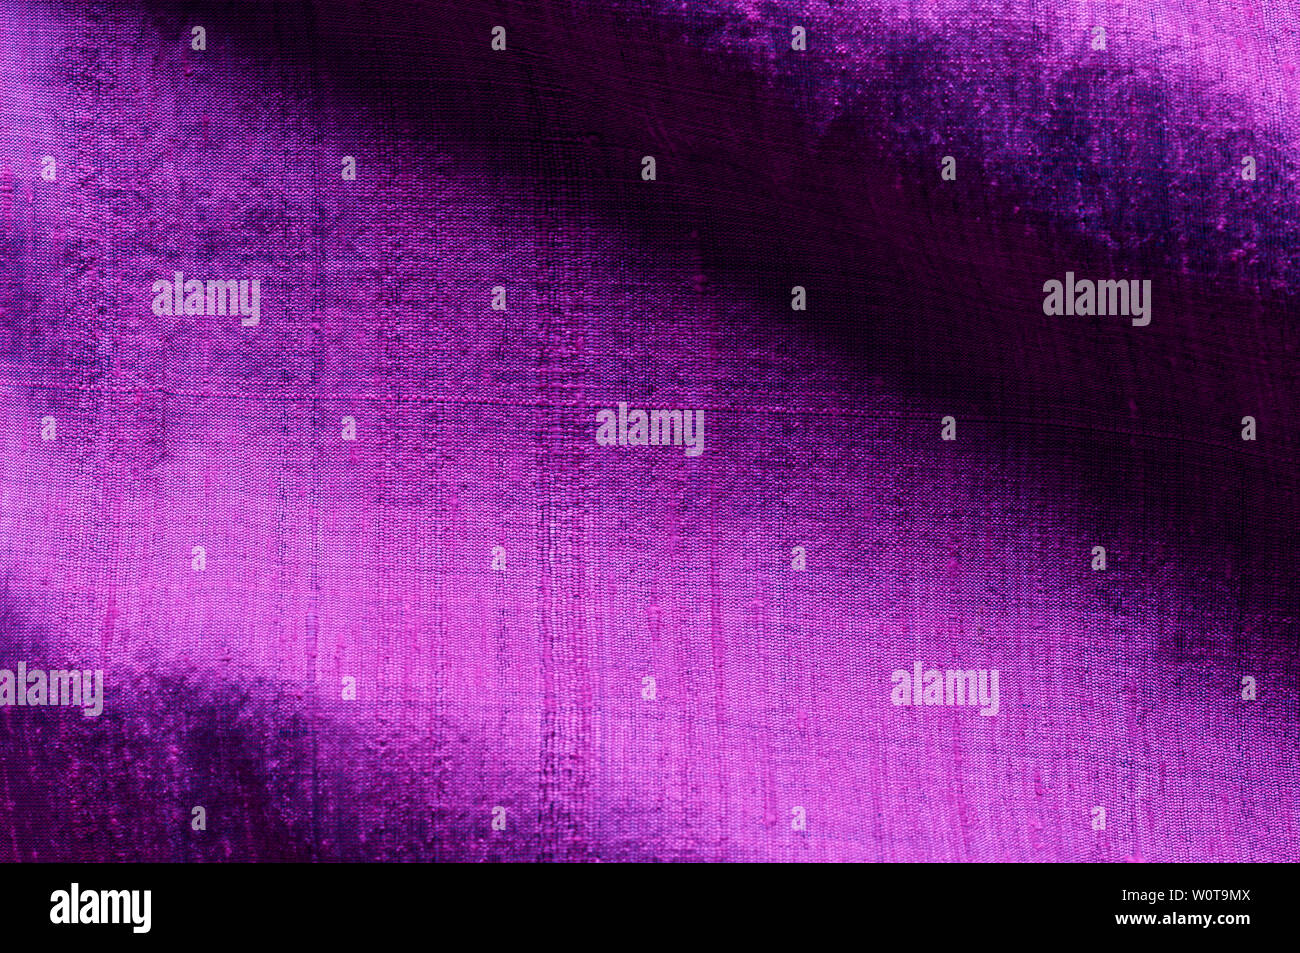 Ultraviolette Seide als abstrakter Hintergrund. Stock Photo